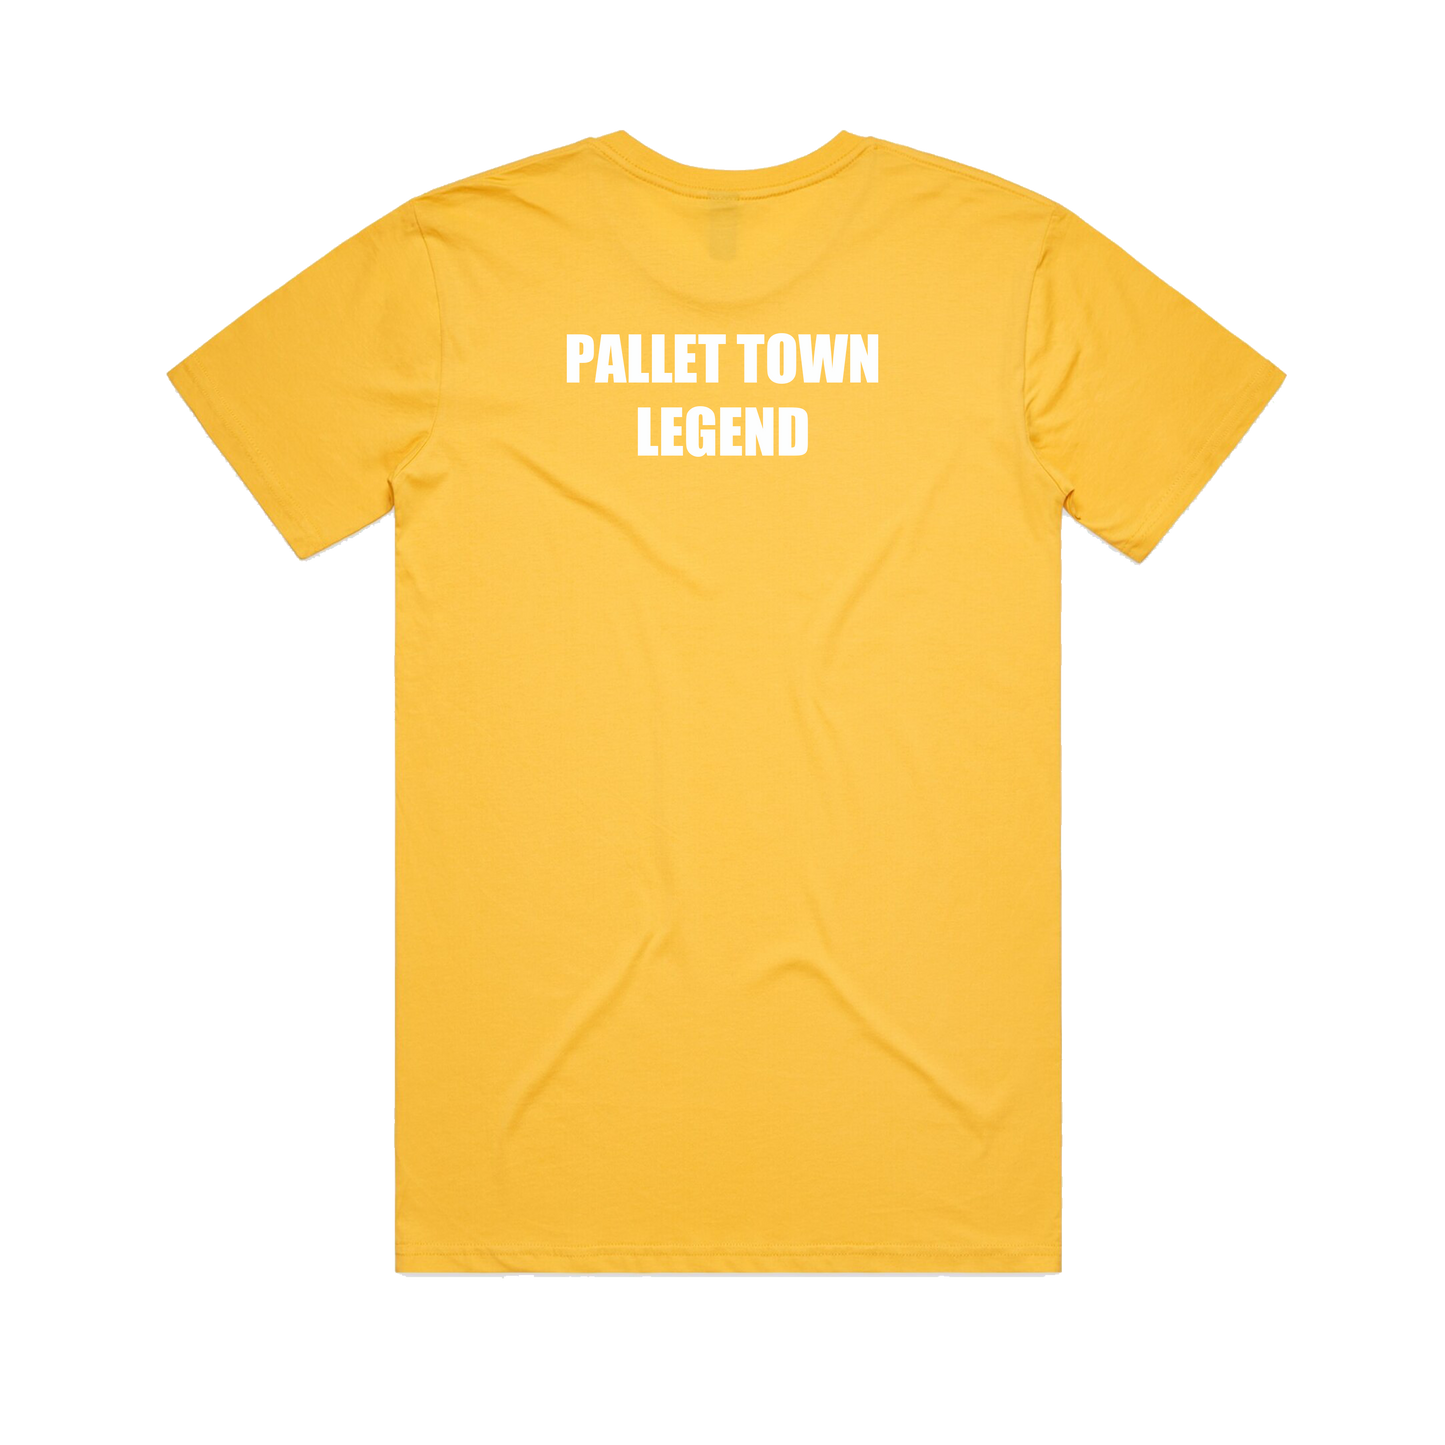 Retro Unisex T-Shirt - Yellow